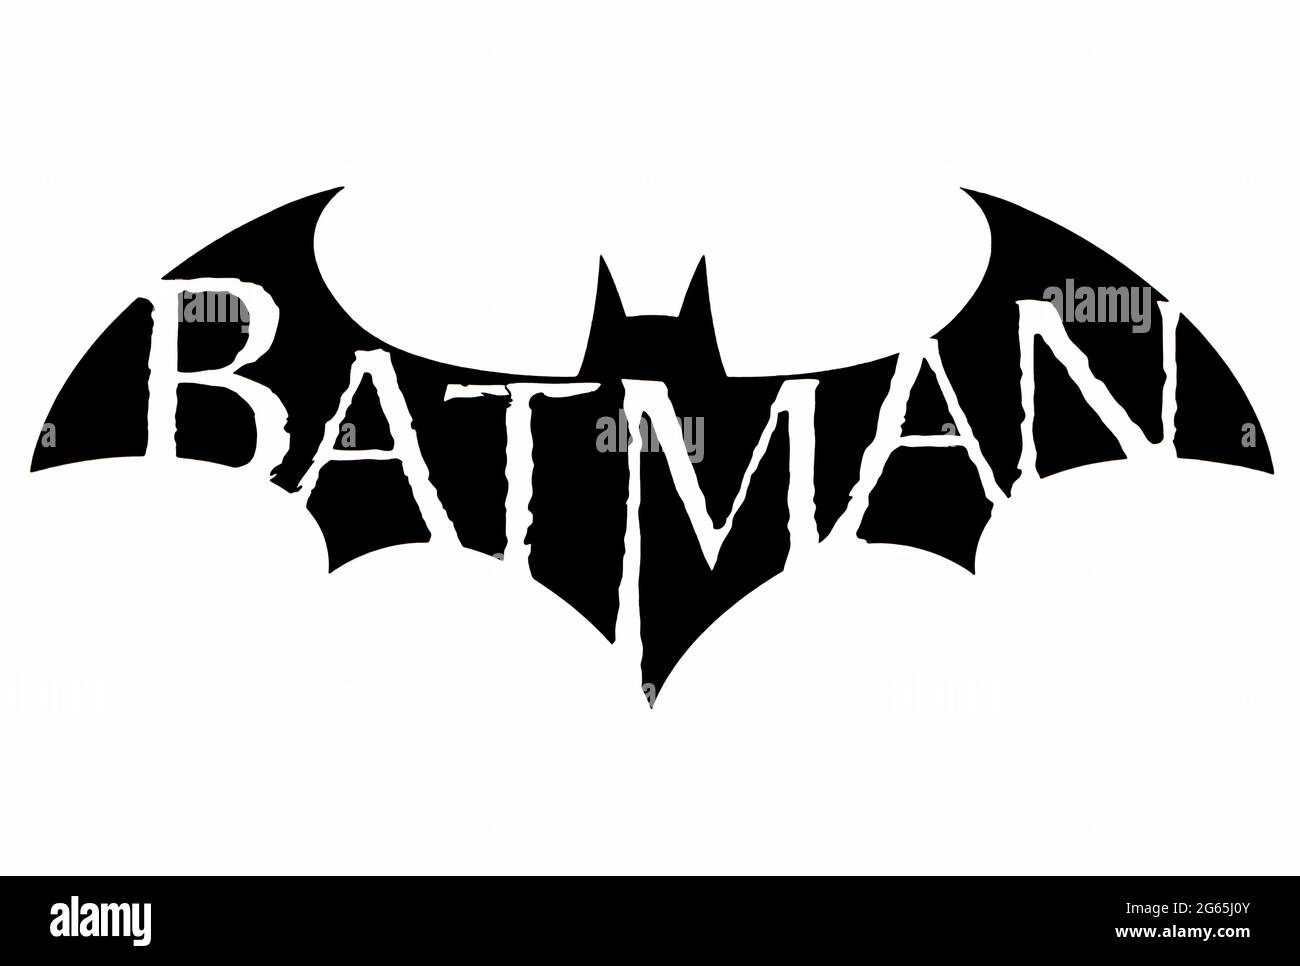 Batman comic Cut Out Stock Images & Pictures - Alamy